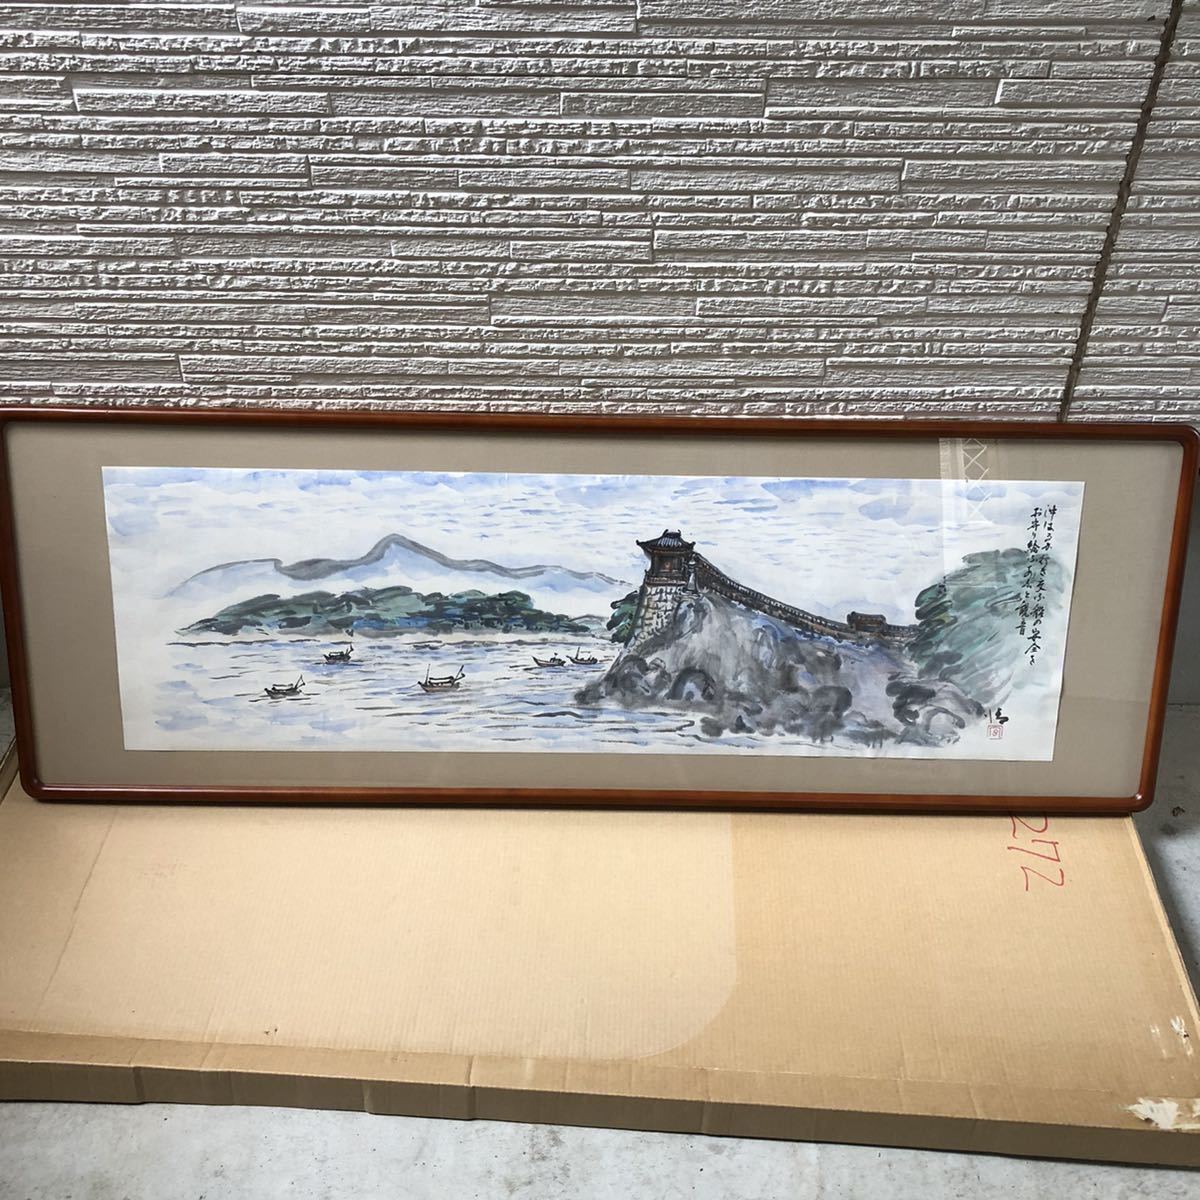 फ़्रेमयुक्त जल रंग परिदृश्य पेंटिंग लकड़ी का फ़्रेम: मेकुवा आकार: लगभग 138 सेमी x 49 सेमी x 2.5 सेमी हस्ताक्षर: जो, चित्रकारी, आबरंग, प्रकृति, परिदृश्य चित्रकला